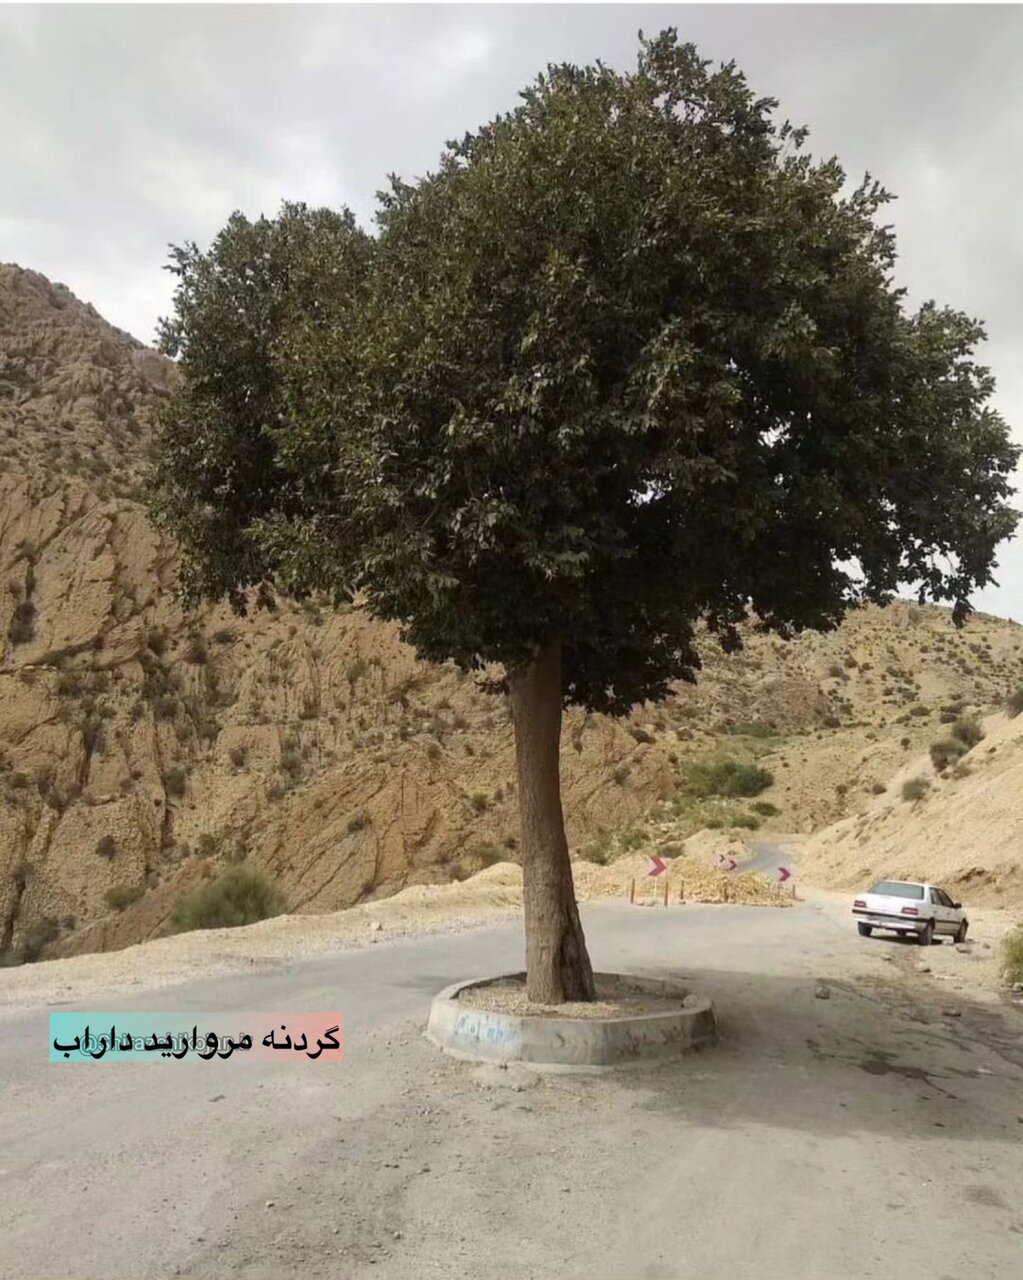 عکس | درختی که وسط جاده میدان درست کرد!